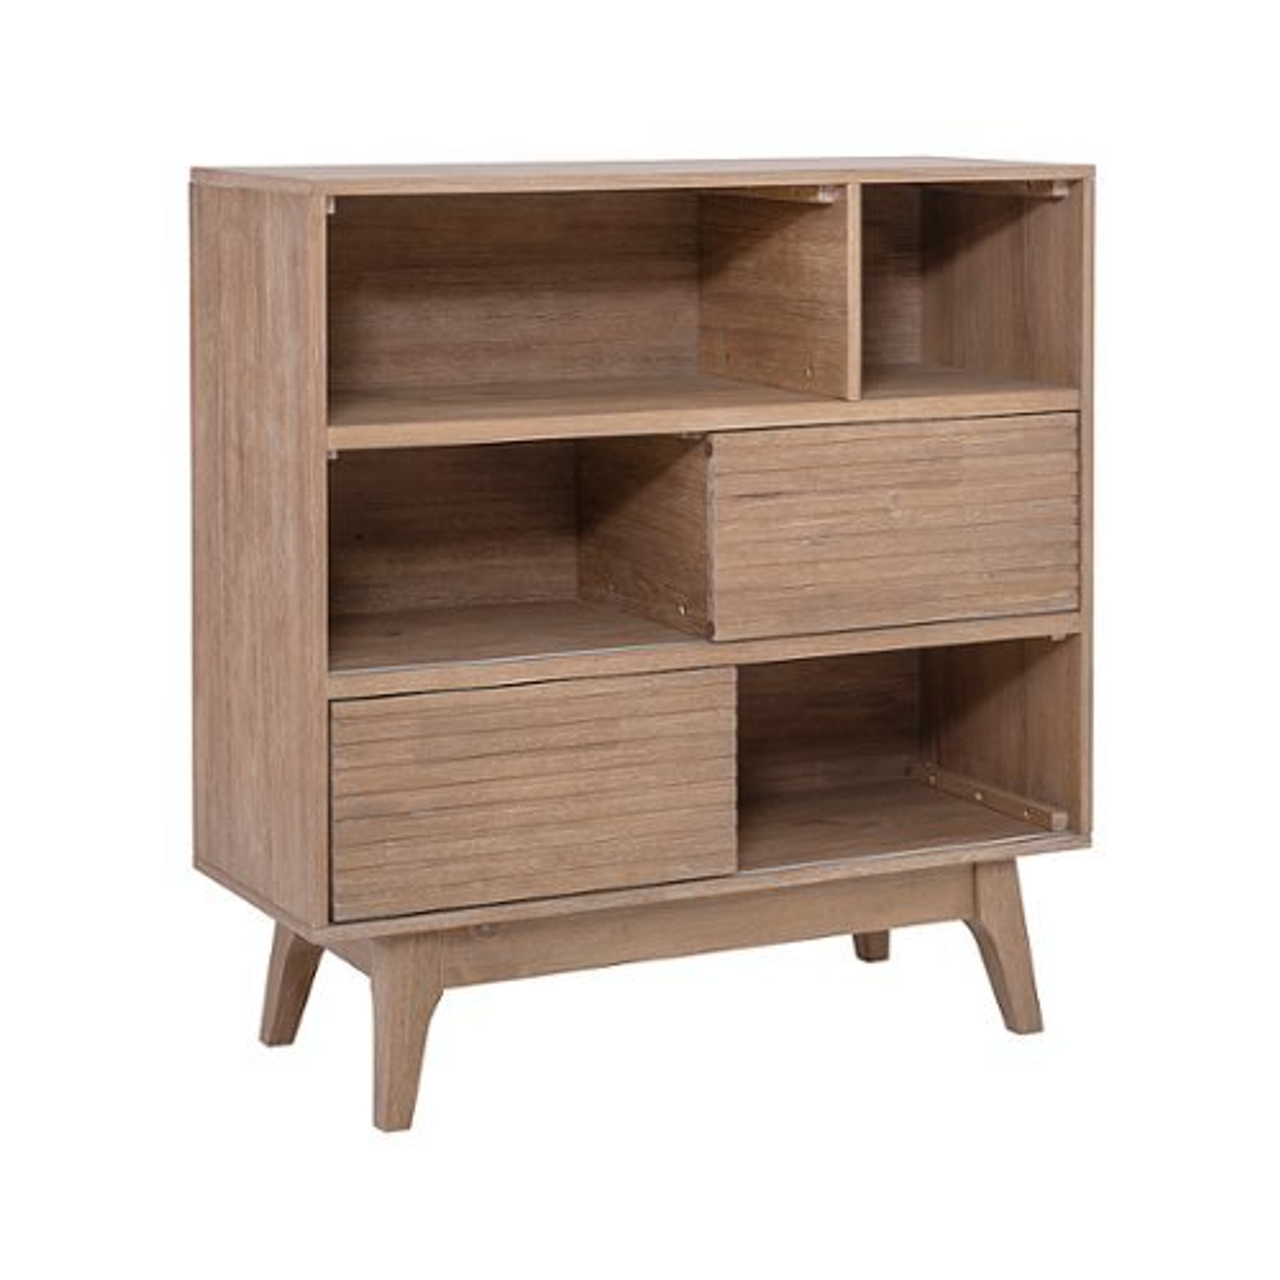 Linon Home Décor - Rosita Three-Shelf Bookcase - Natural